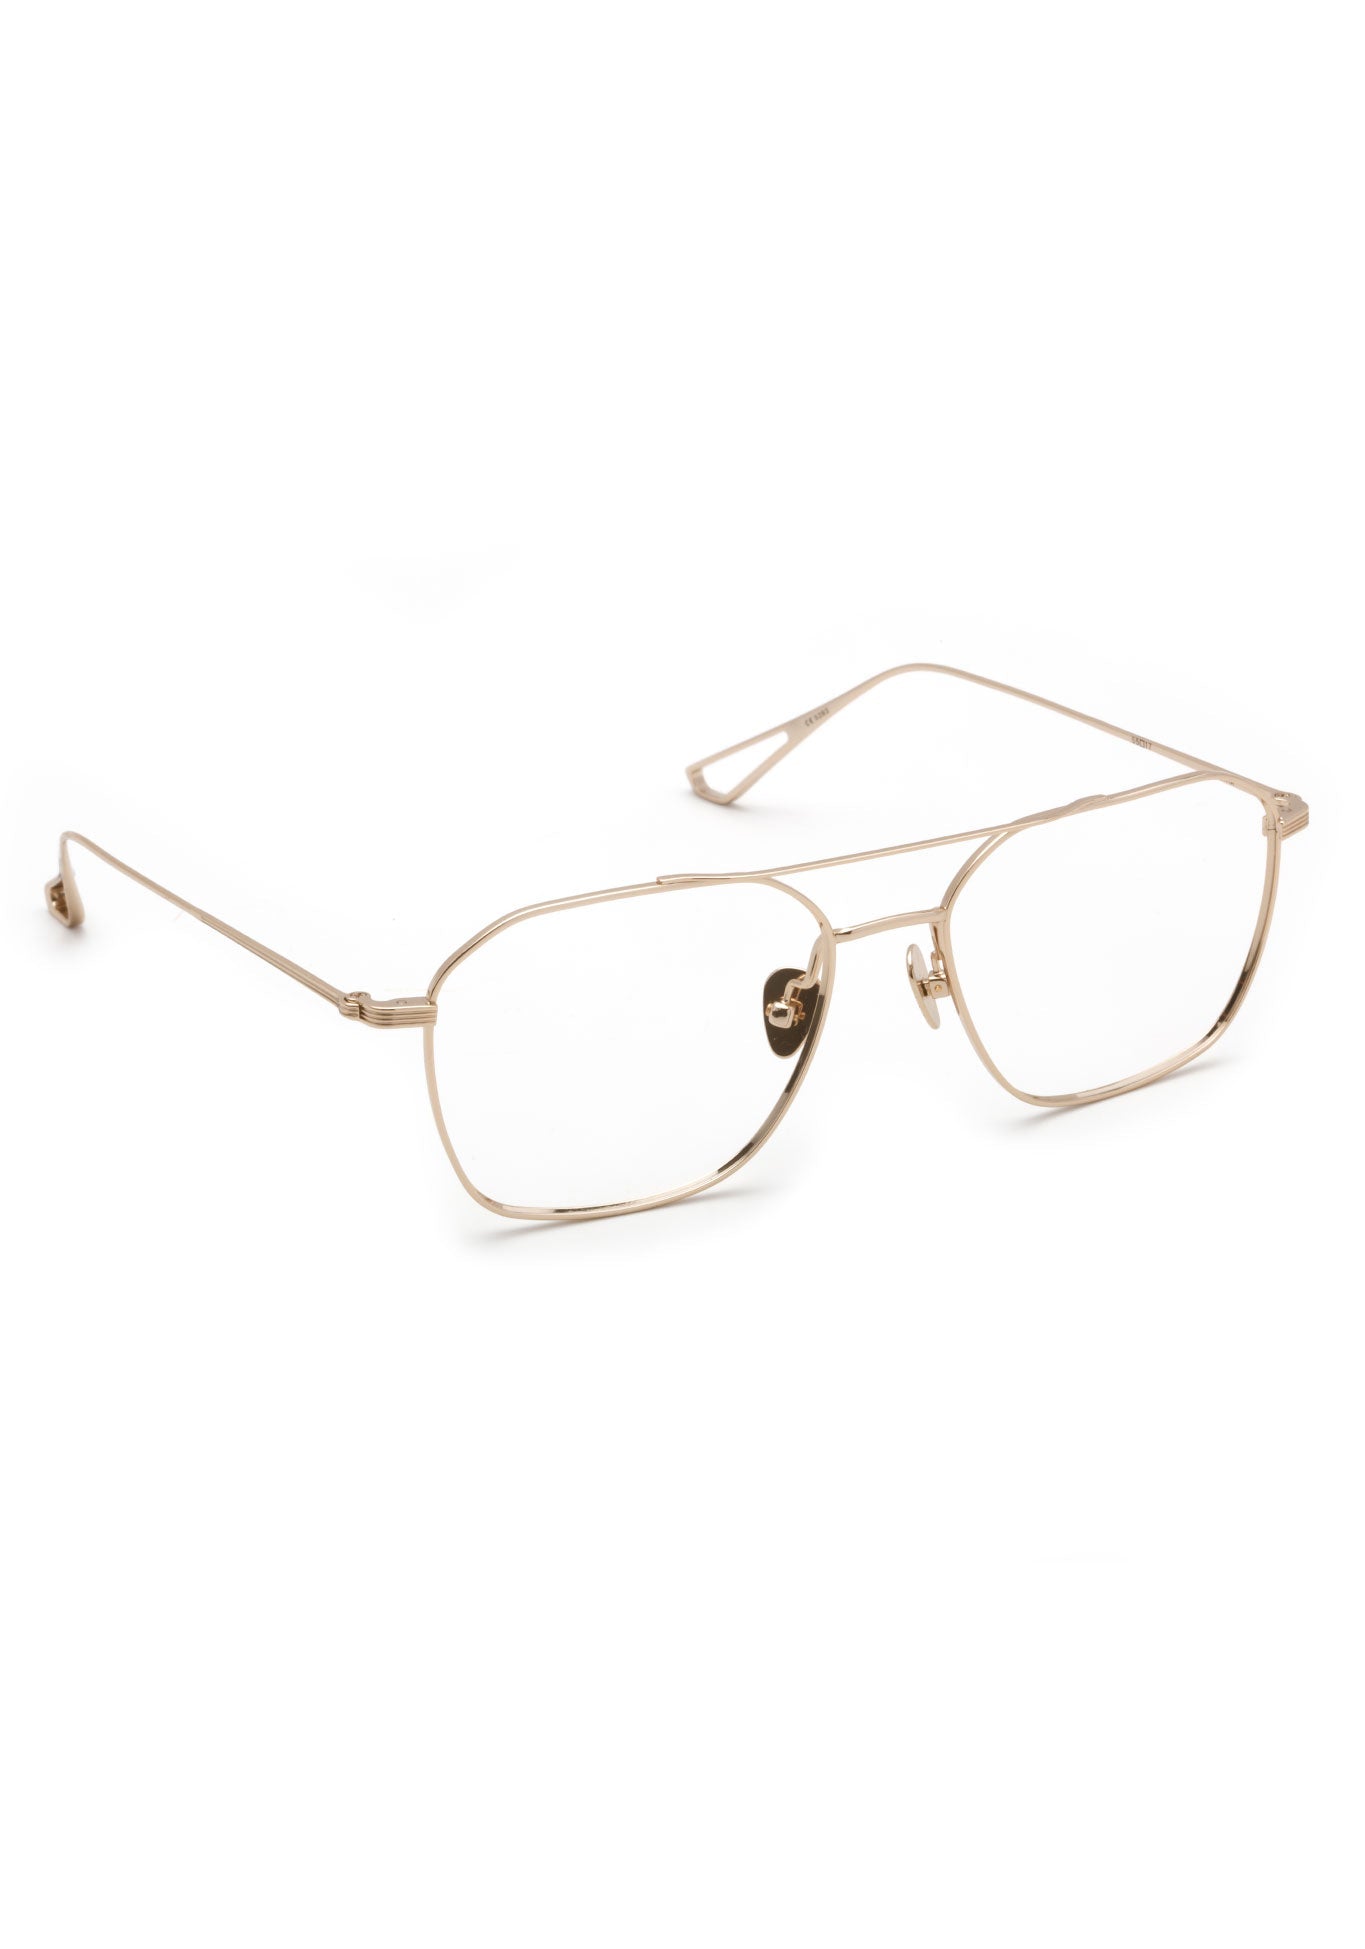 KERWE BERM | 12K Titanium Handcrafted, luxury 12k gold metal eyeglasses